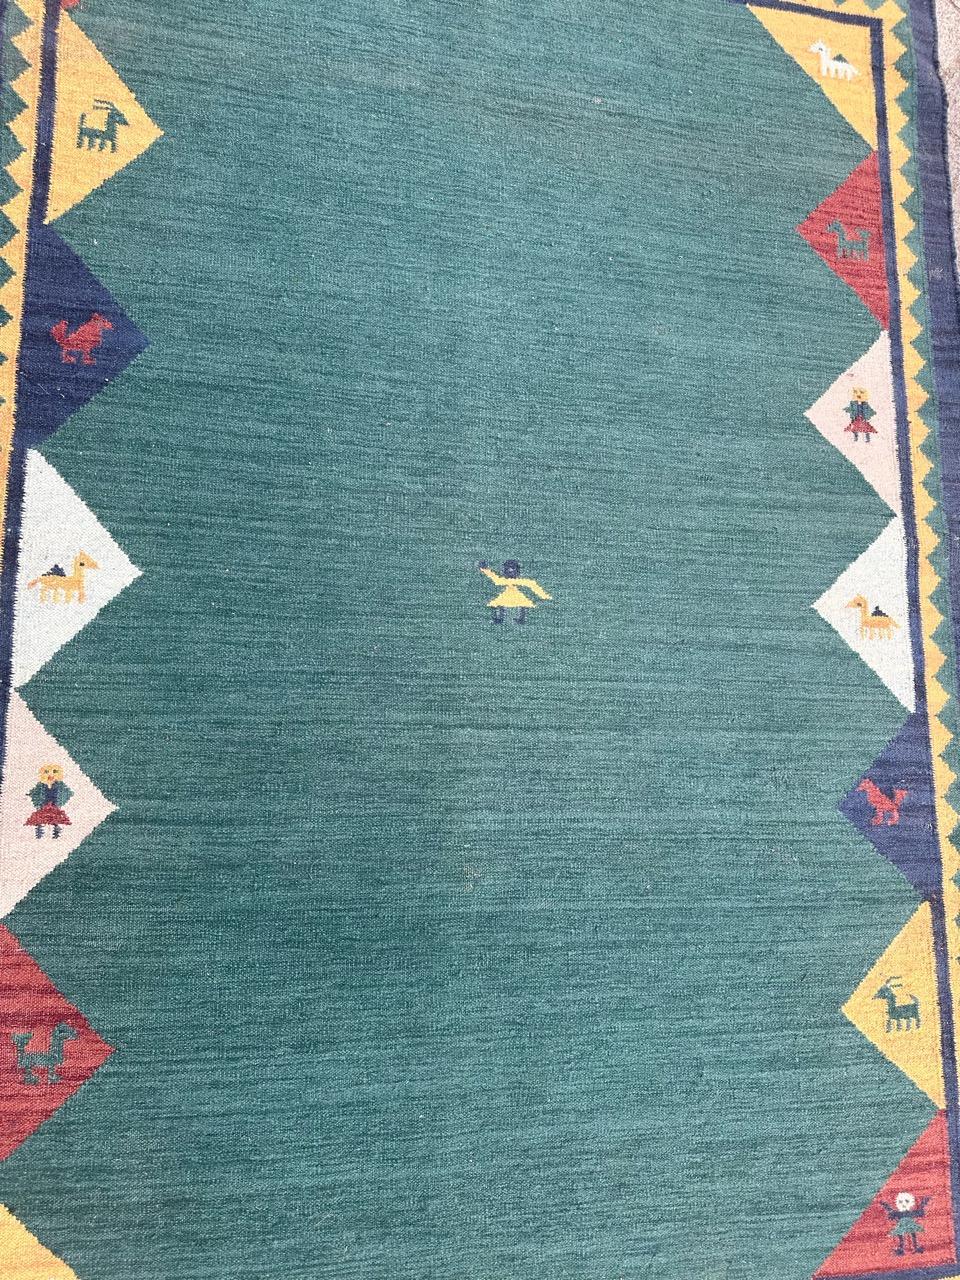 Magnifique Rug & Kilim indien vintage avec le design des tapis gabbeh et de belles couleurs avec un champ vert, bleu, jaune, rouge, rose et blanc, entièrement tissé à la main avec de la laine sur une base de coton. 

Magnifique tapis pakistanais